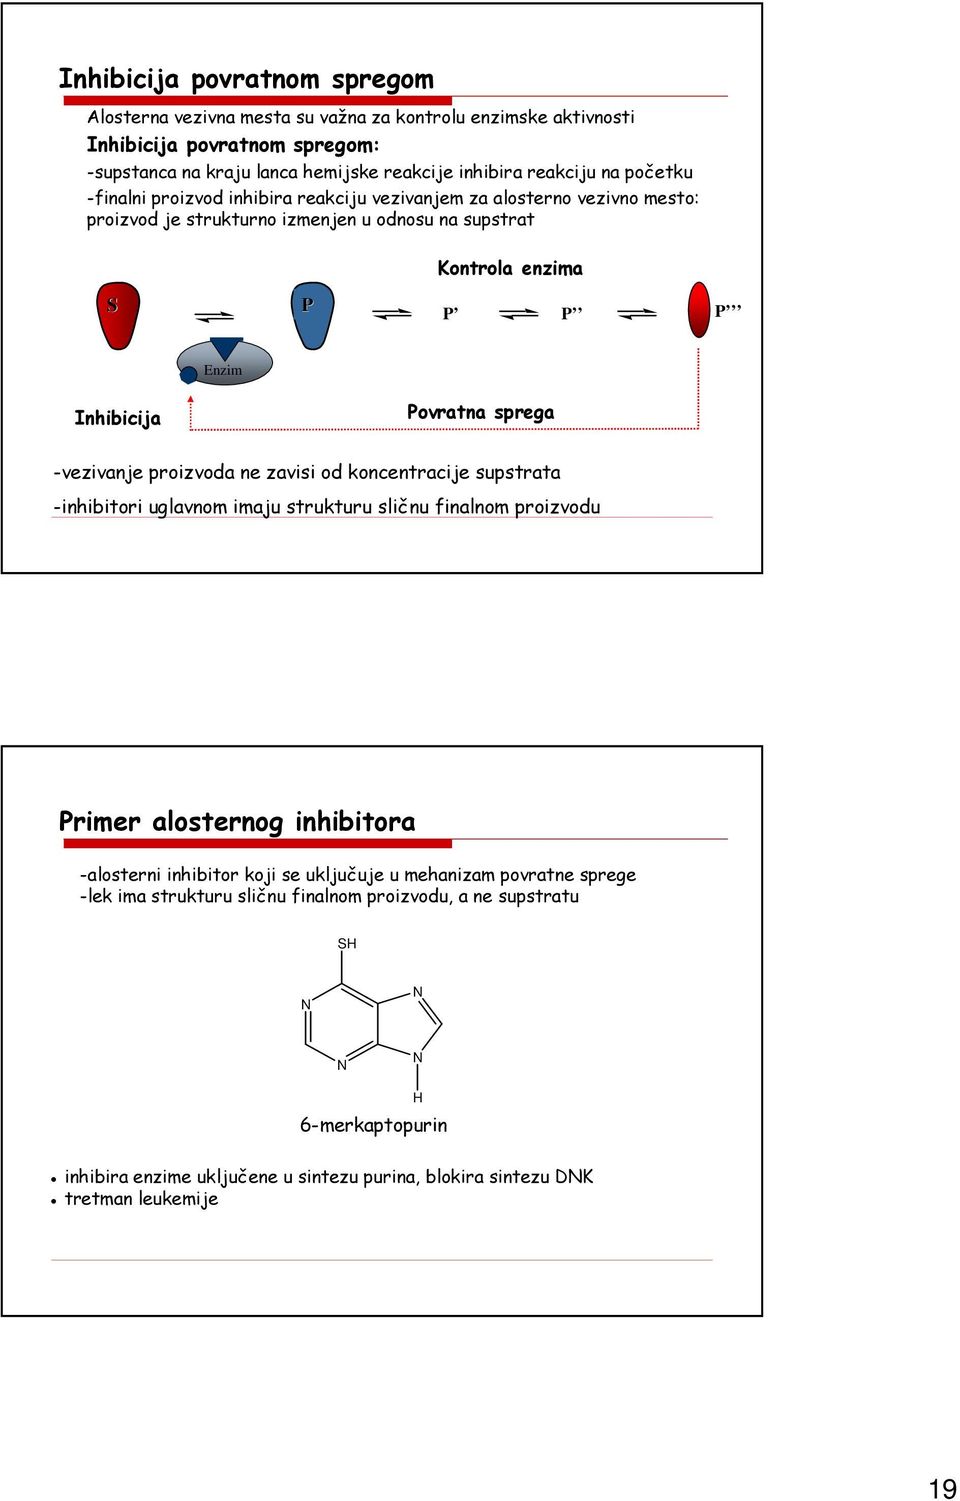 Inhibicija Inhibition Feedback Povratna control sprega -vezivanje proizvoda ne zavisi od koncentracije supstrata -inhibitori uglavnom imaju strukturu sličnu finalnom proizvodu Primer alosternog